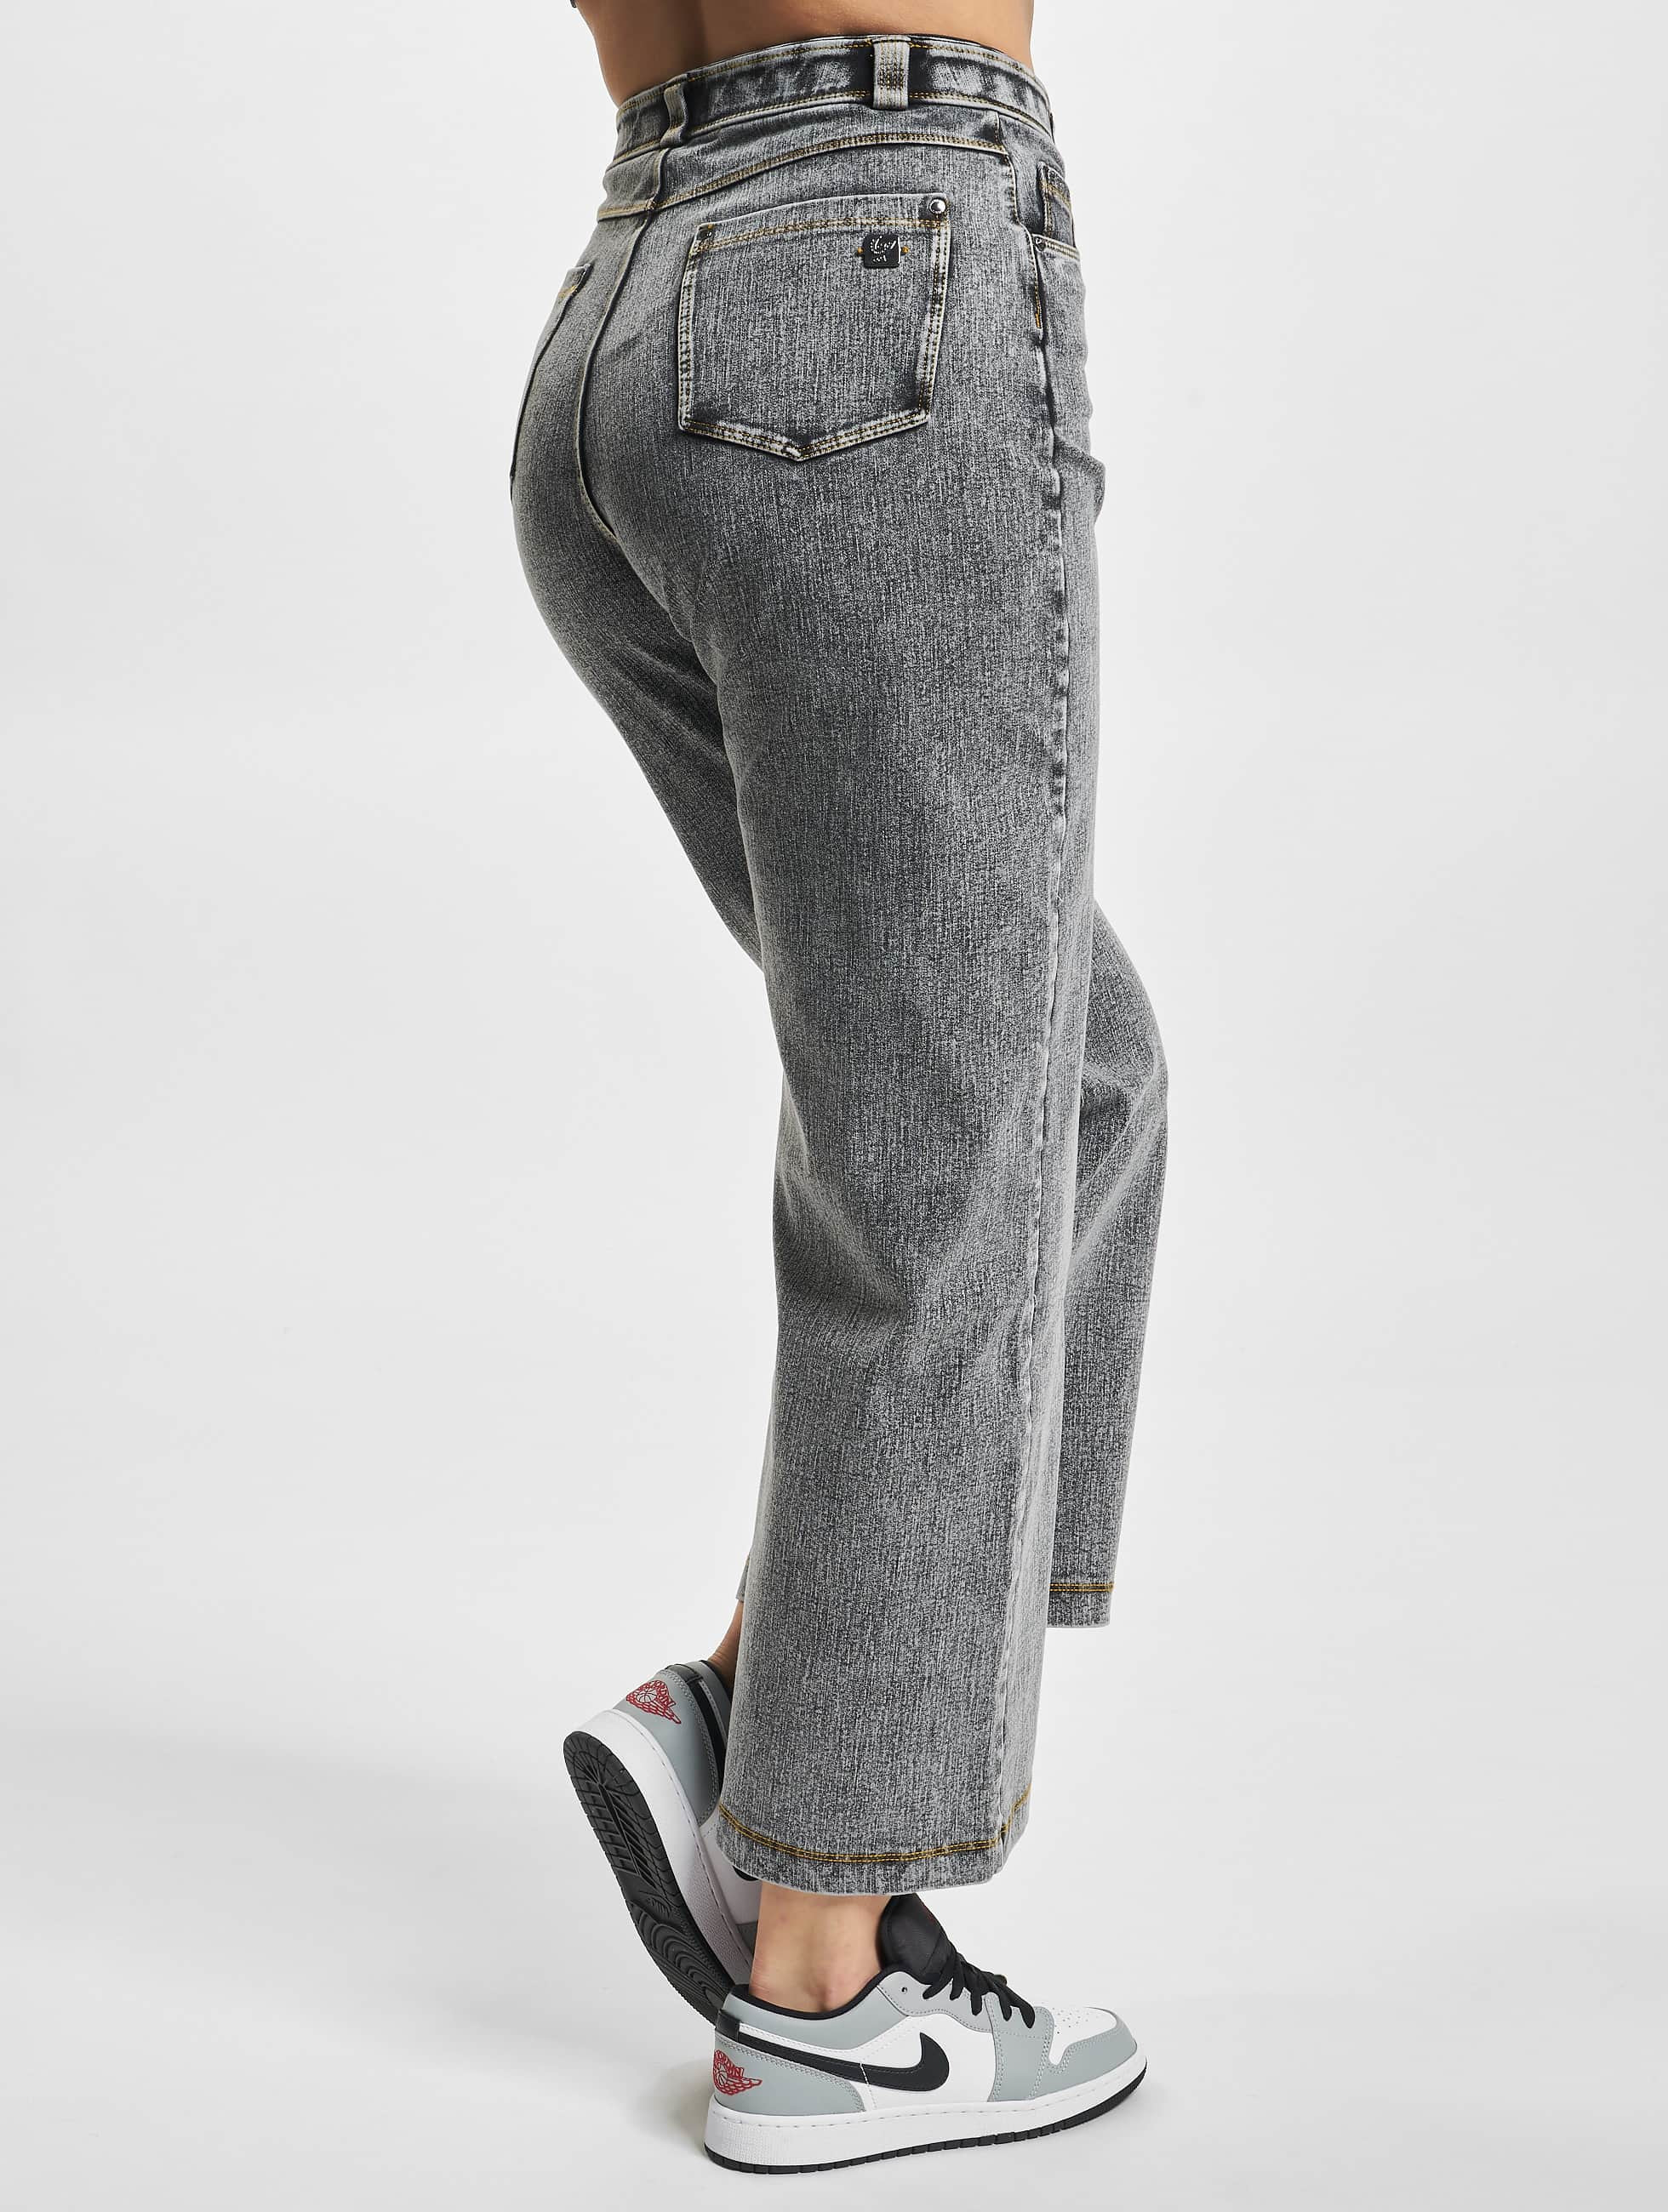 Bouwen Superioriteit Natte sneeuw Freddy Jeans / Loose fit jeans High Waist Wide Leg - Washed Denim in grijs  947816